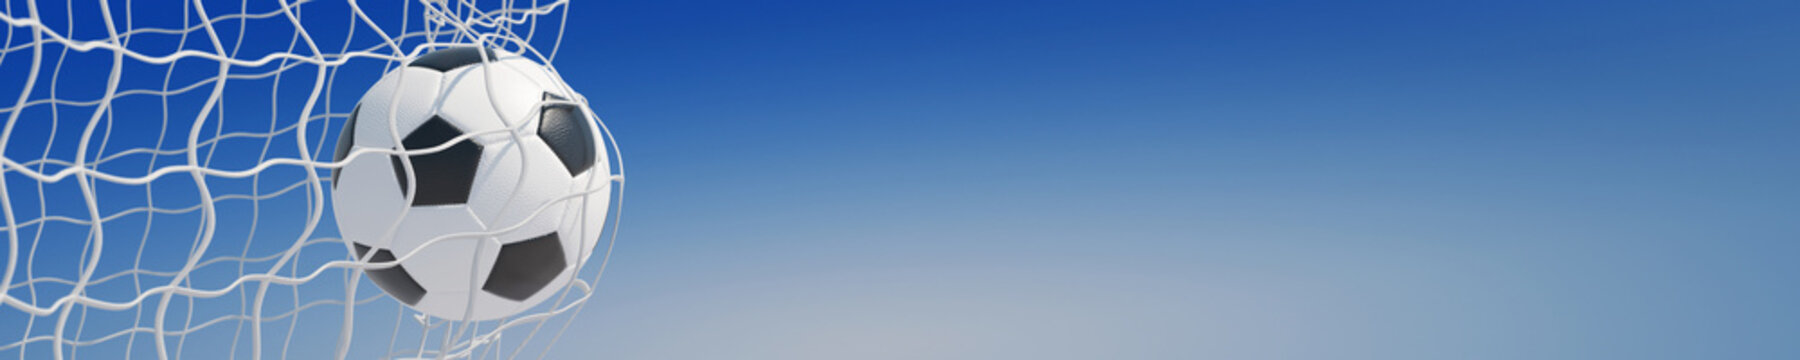 Fototapeta Panorama piłki nożnej w bramce przeciw niebu